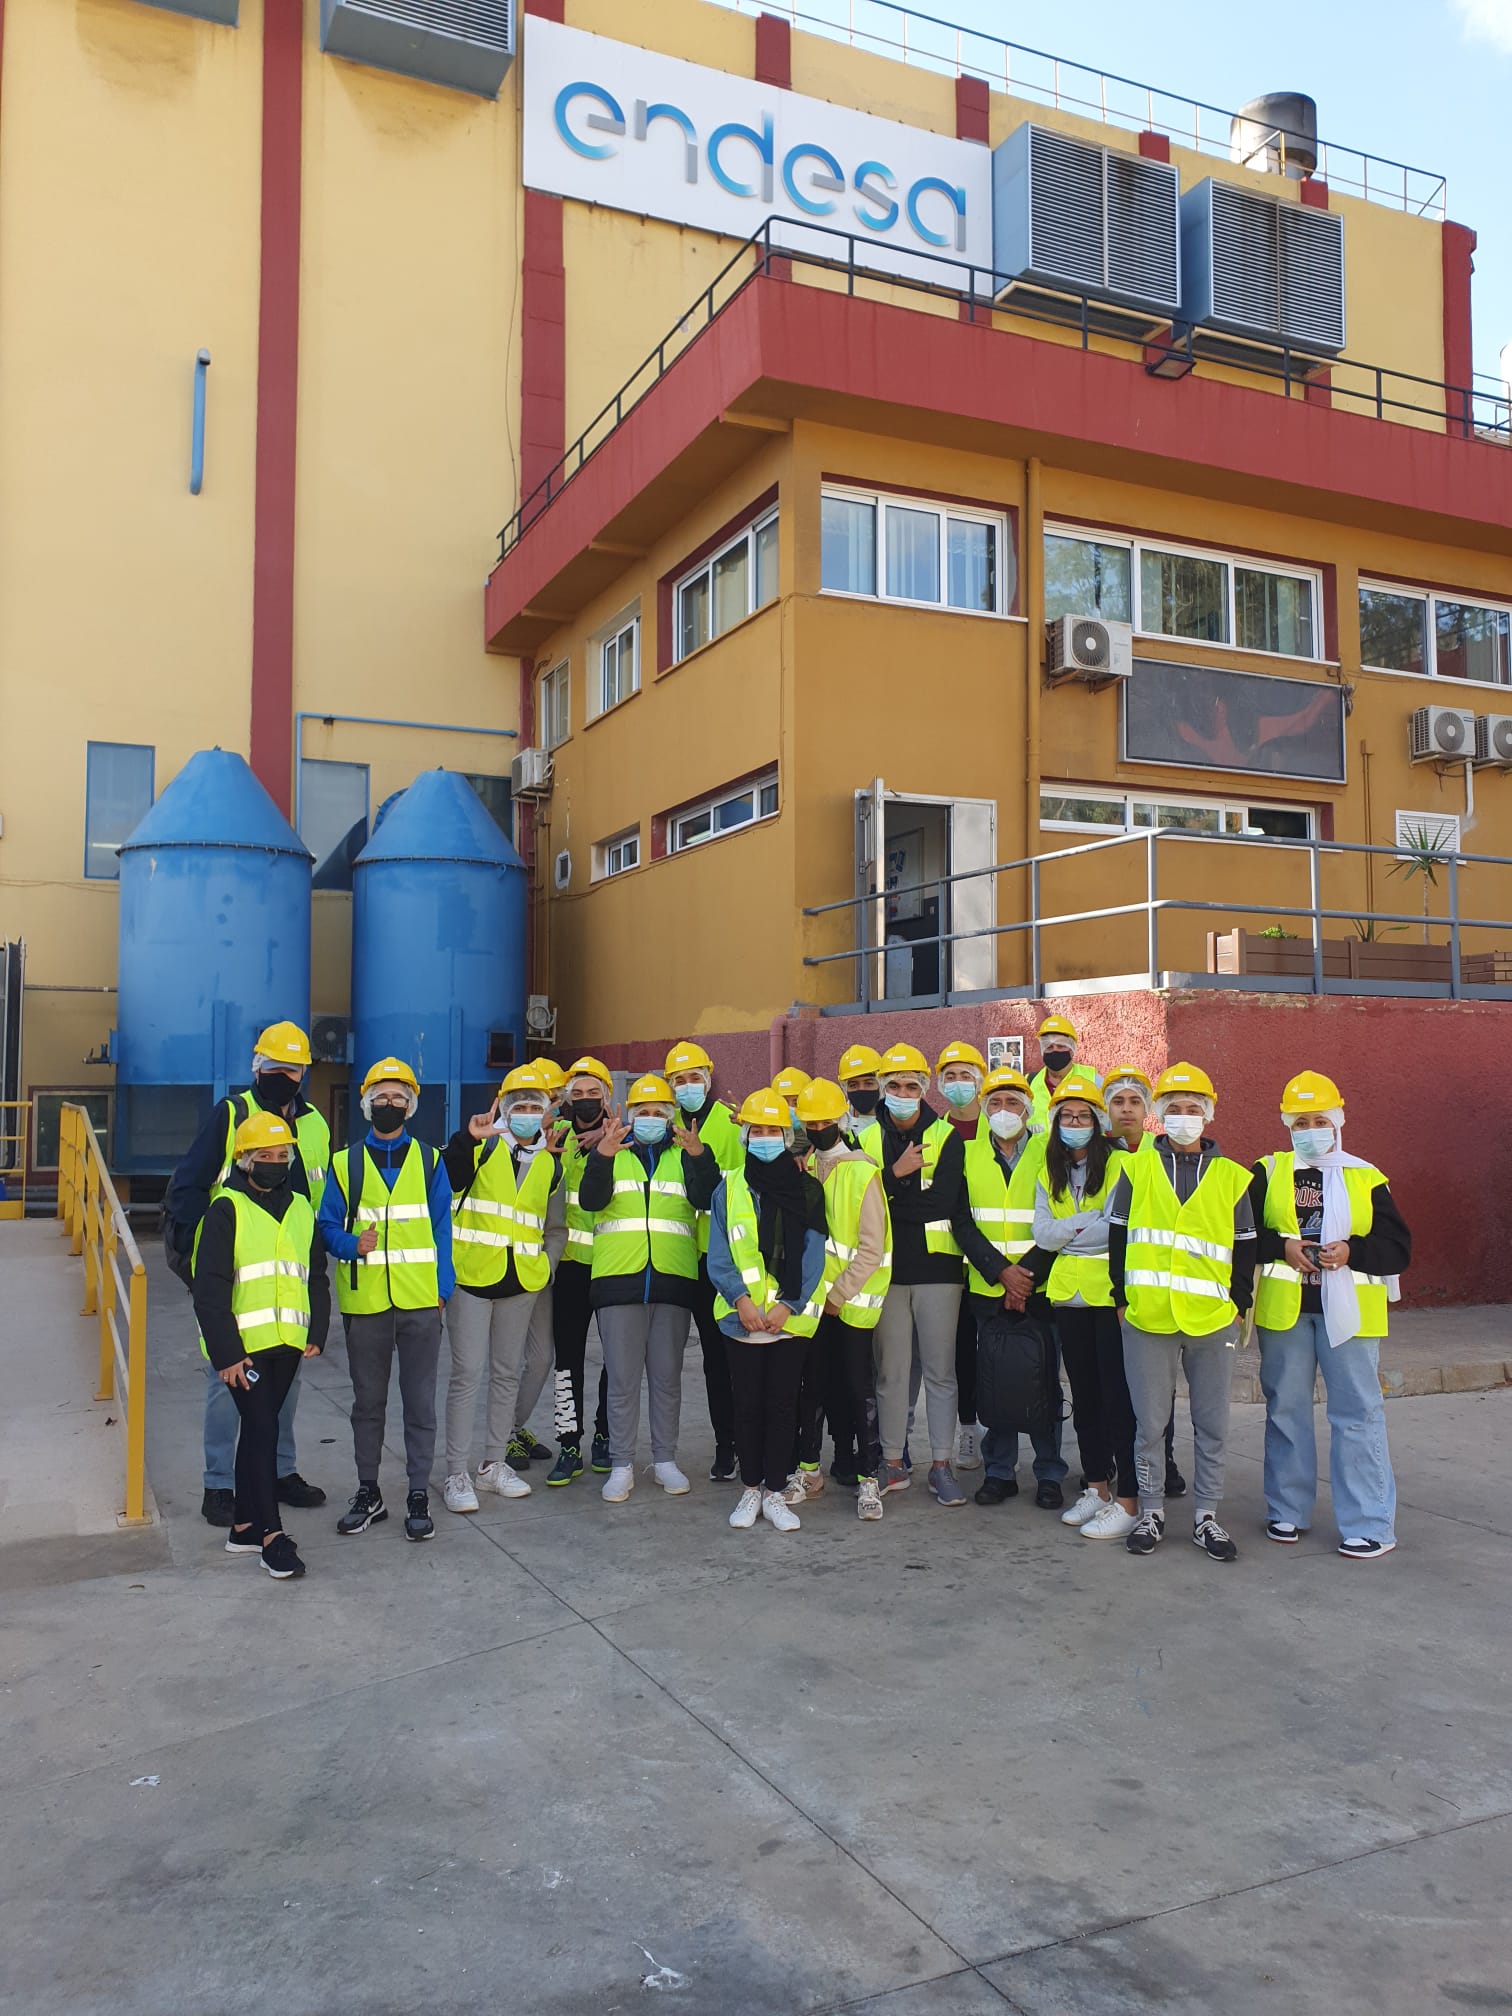 Los alumnos/as de 4.º ESO-C han visitado las instalaciones de Endesa, empresa líder del sector eléctrico español. Su principal negocio es la generación, distribución y venta de electricidad.